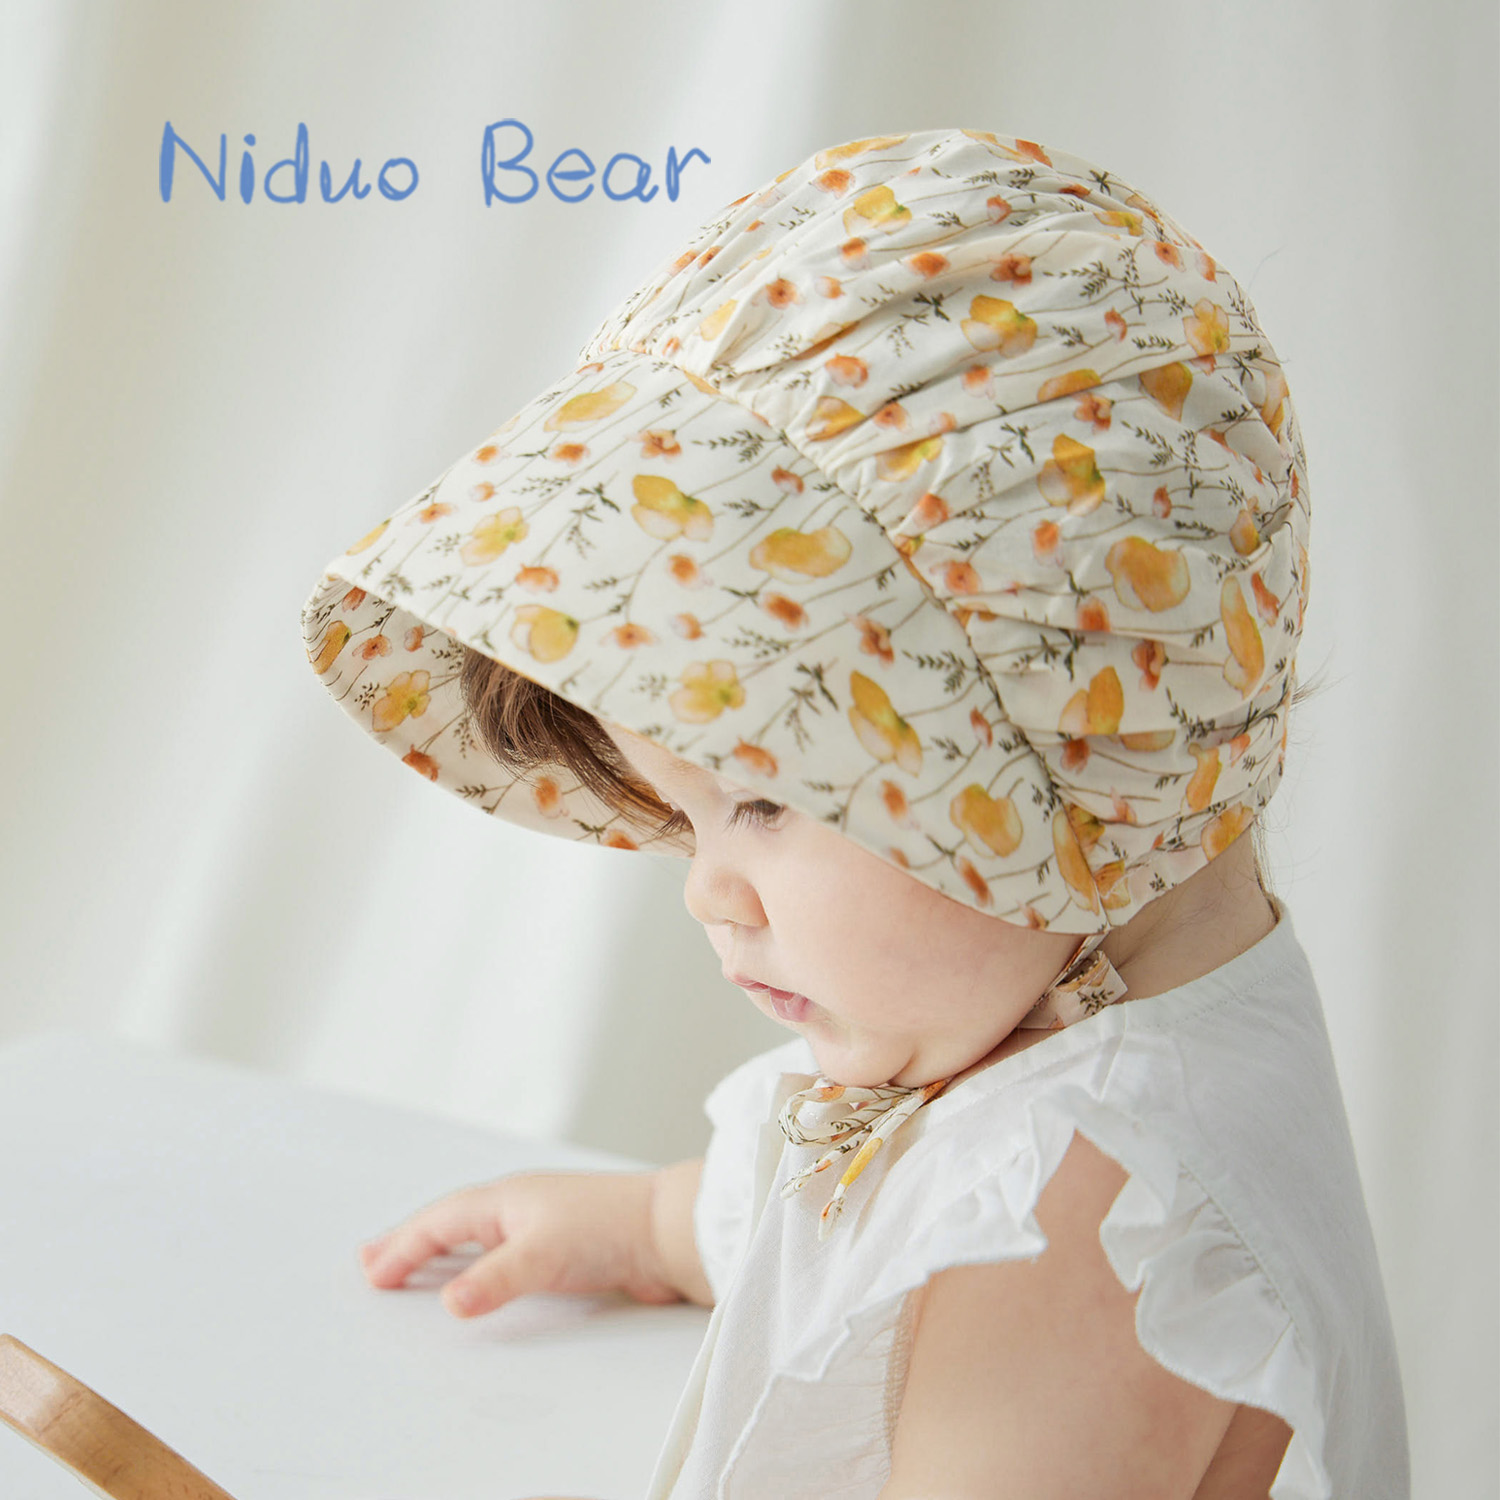 尼多熊新生婴儿帽子碎花公主帽儿童遮阳帽胎帽宝宝帽子夏季薄款